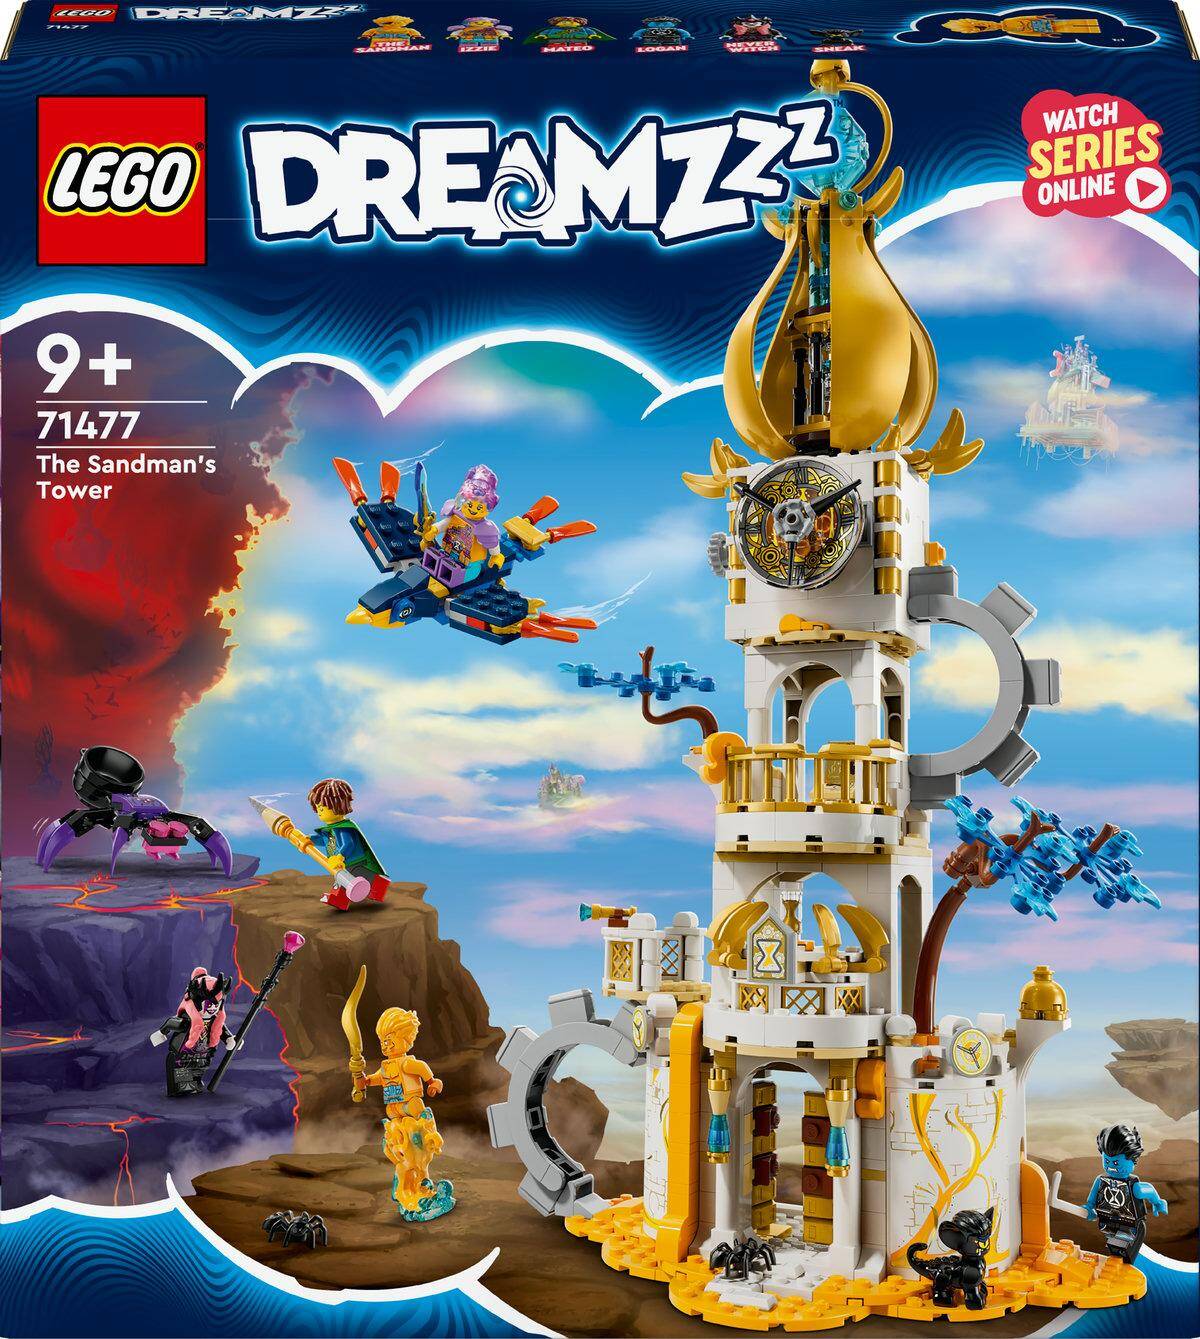 LEGO® 71477 DREAMZZZ WIEŻA PIASKINA